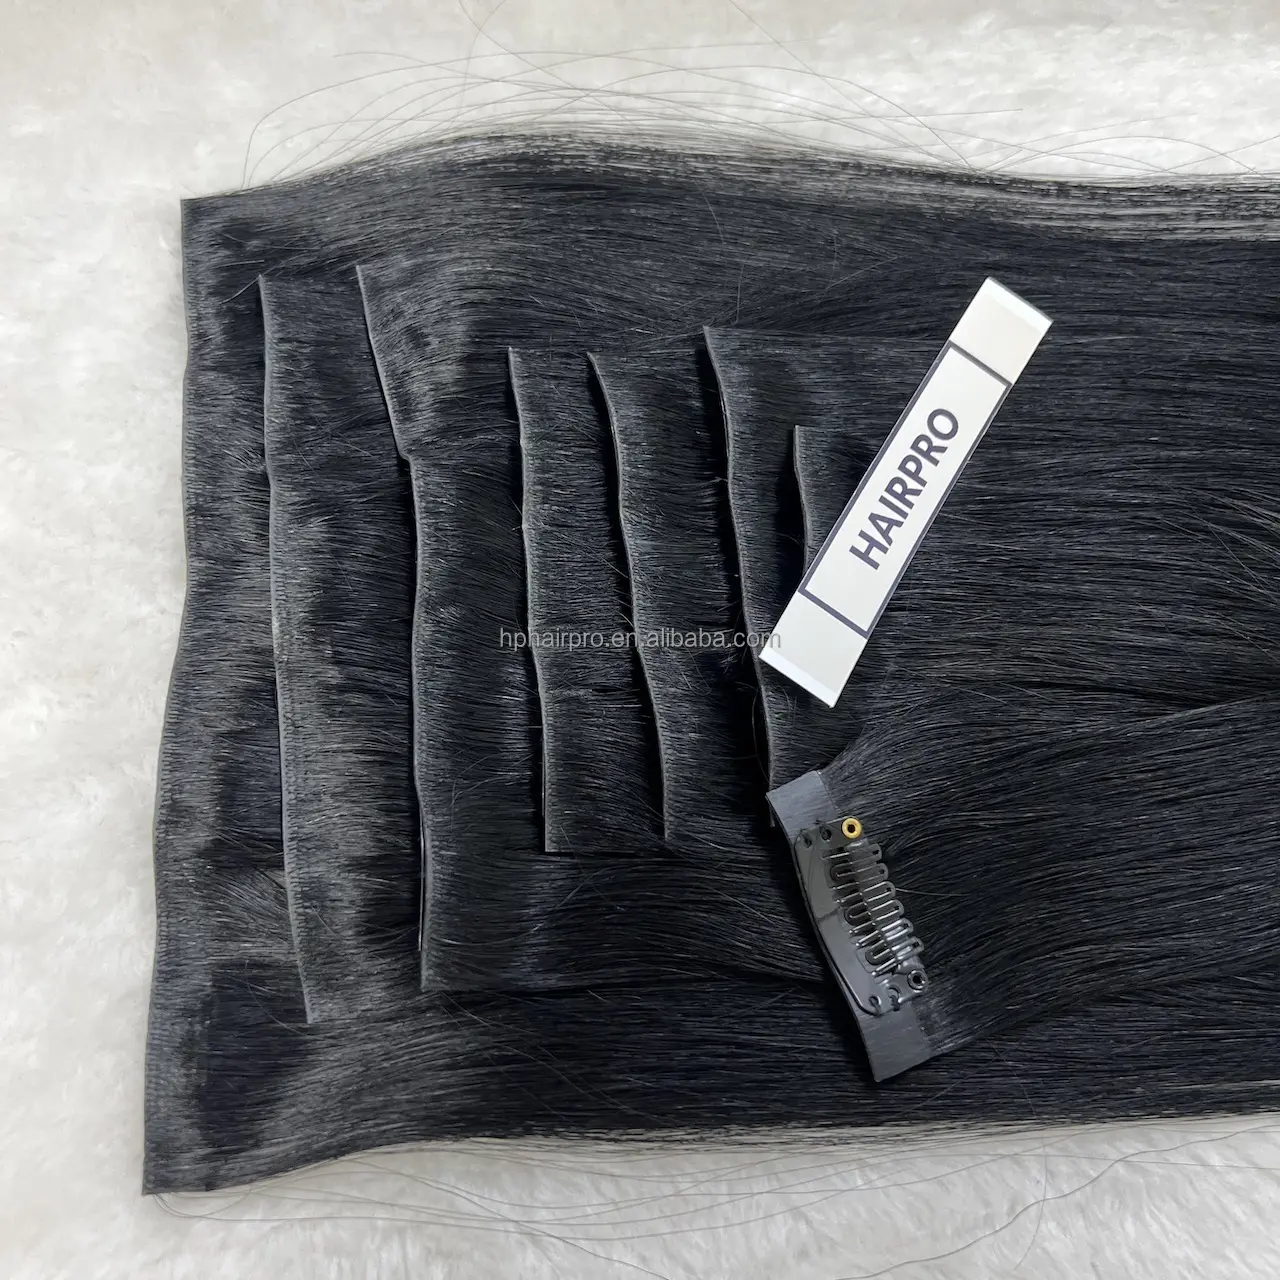 Extension per capelli invisibili nuovo metodo Clip In Clip invisibile senza soluzione di continuità nelle estensioni dei capelli